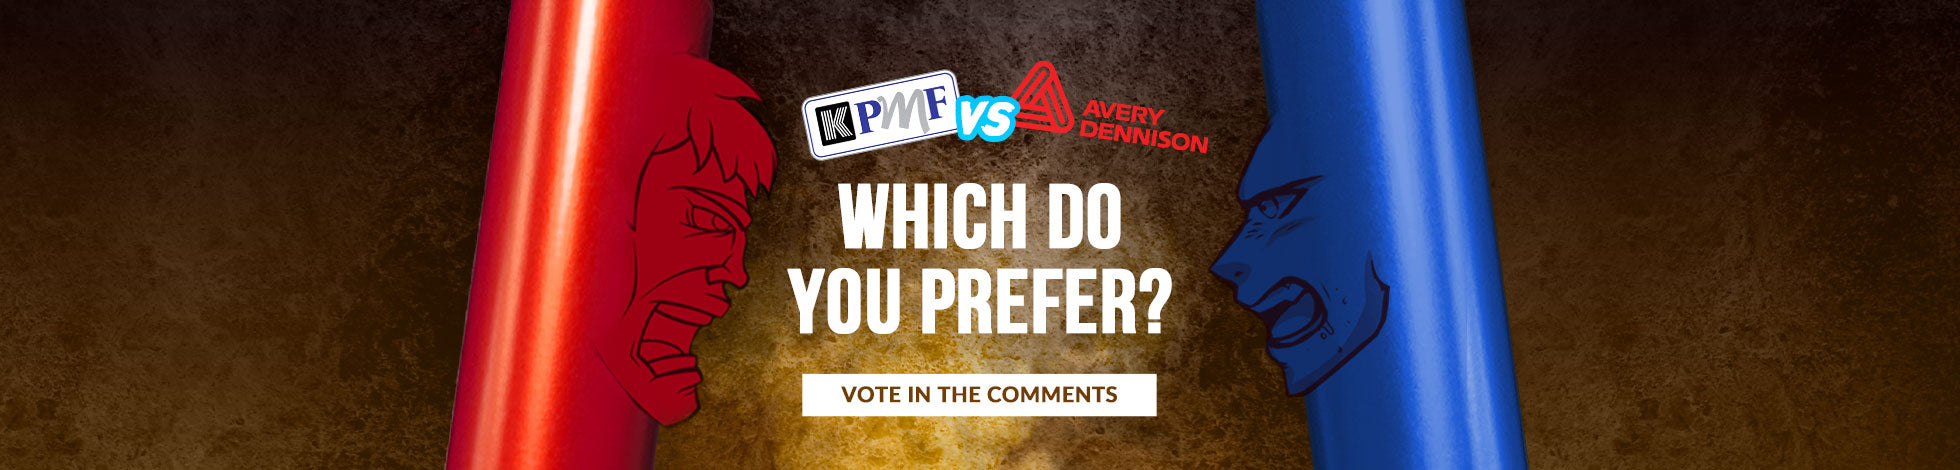 KPMF V.S. Avery Dennison (Battle of The Brands)